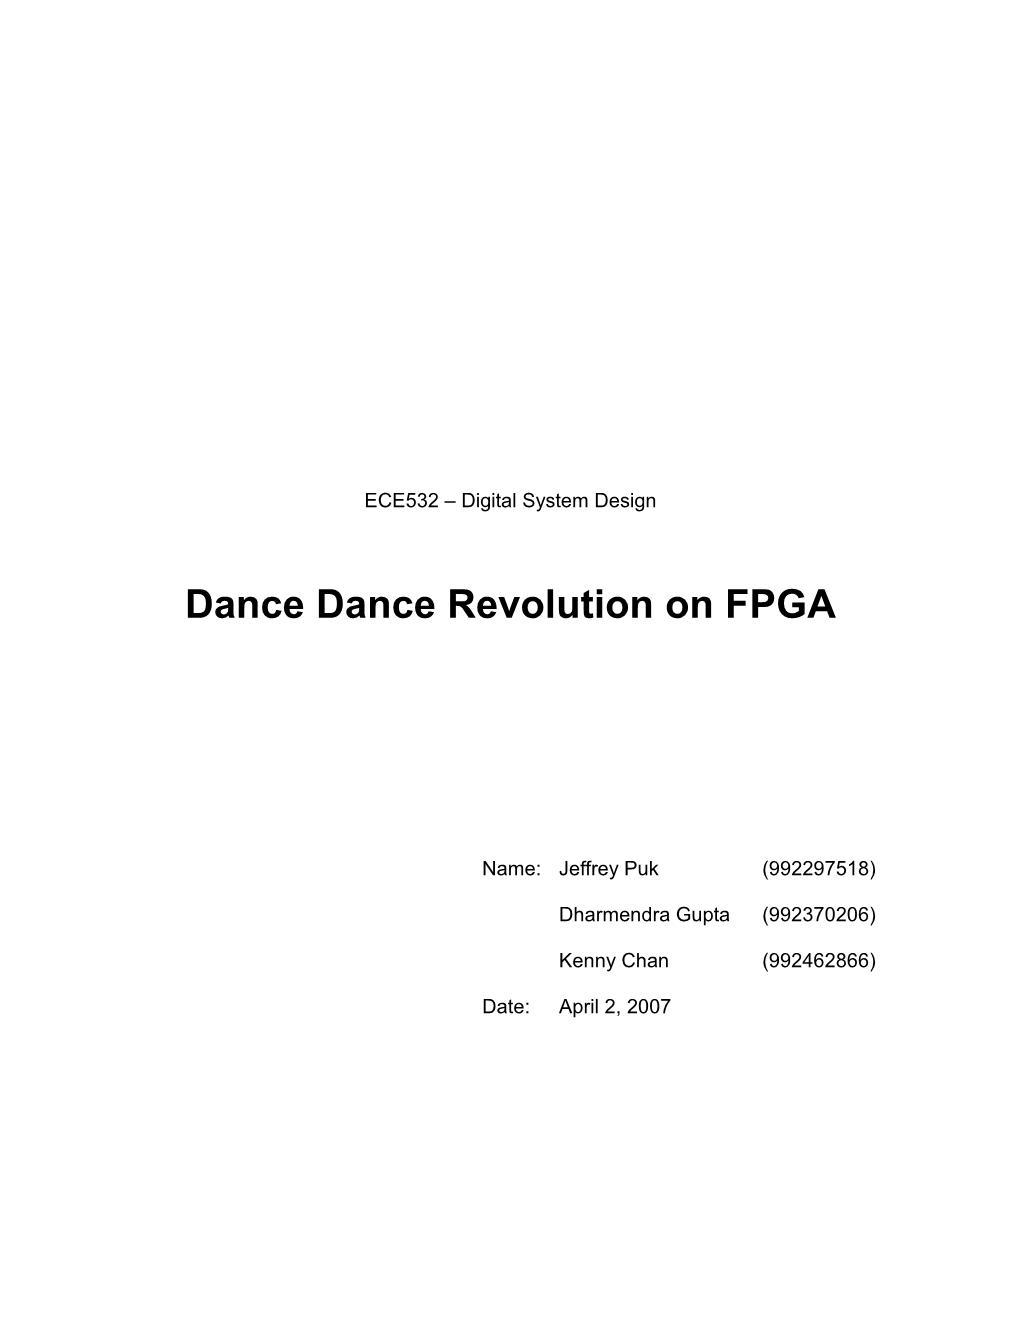 Dance Dance Revolution on FPGA